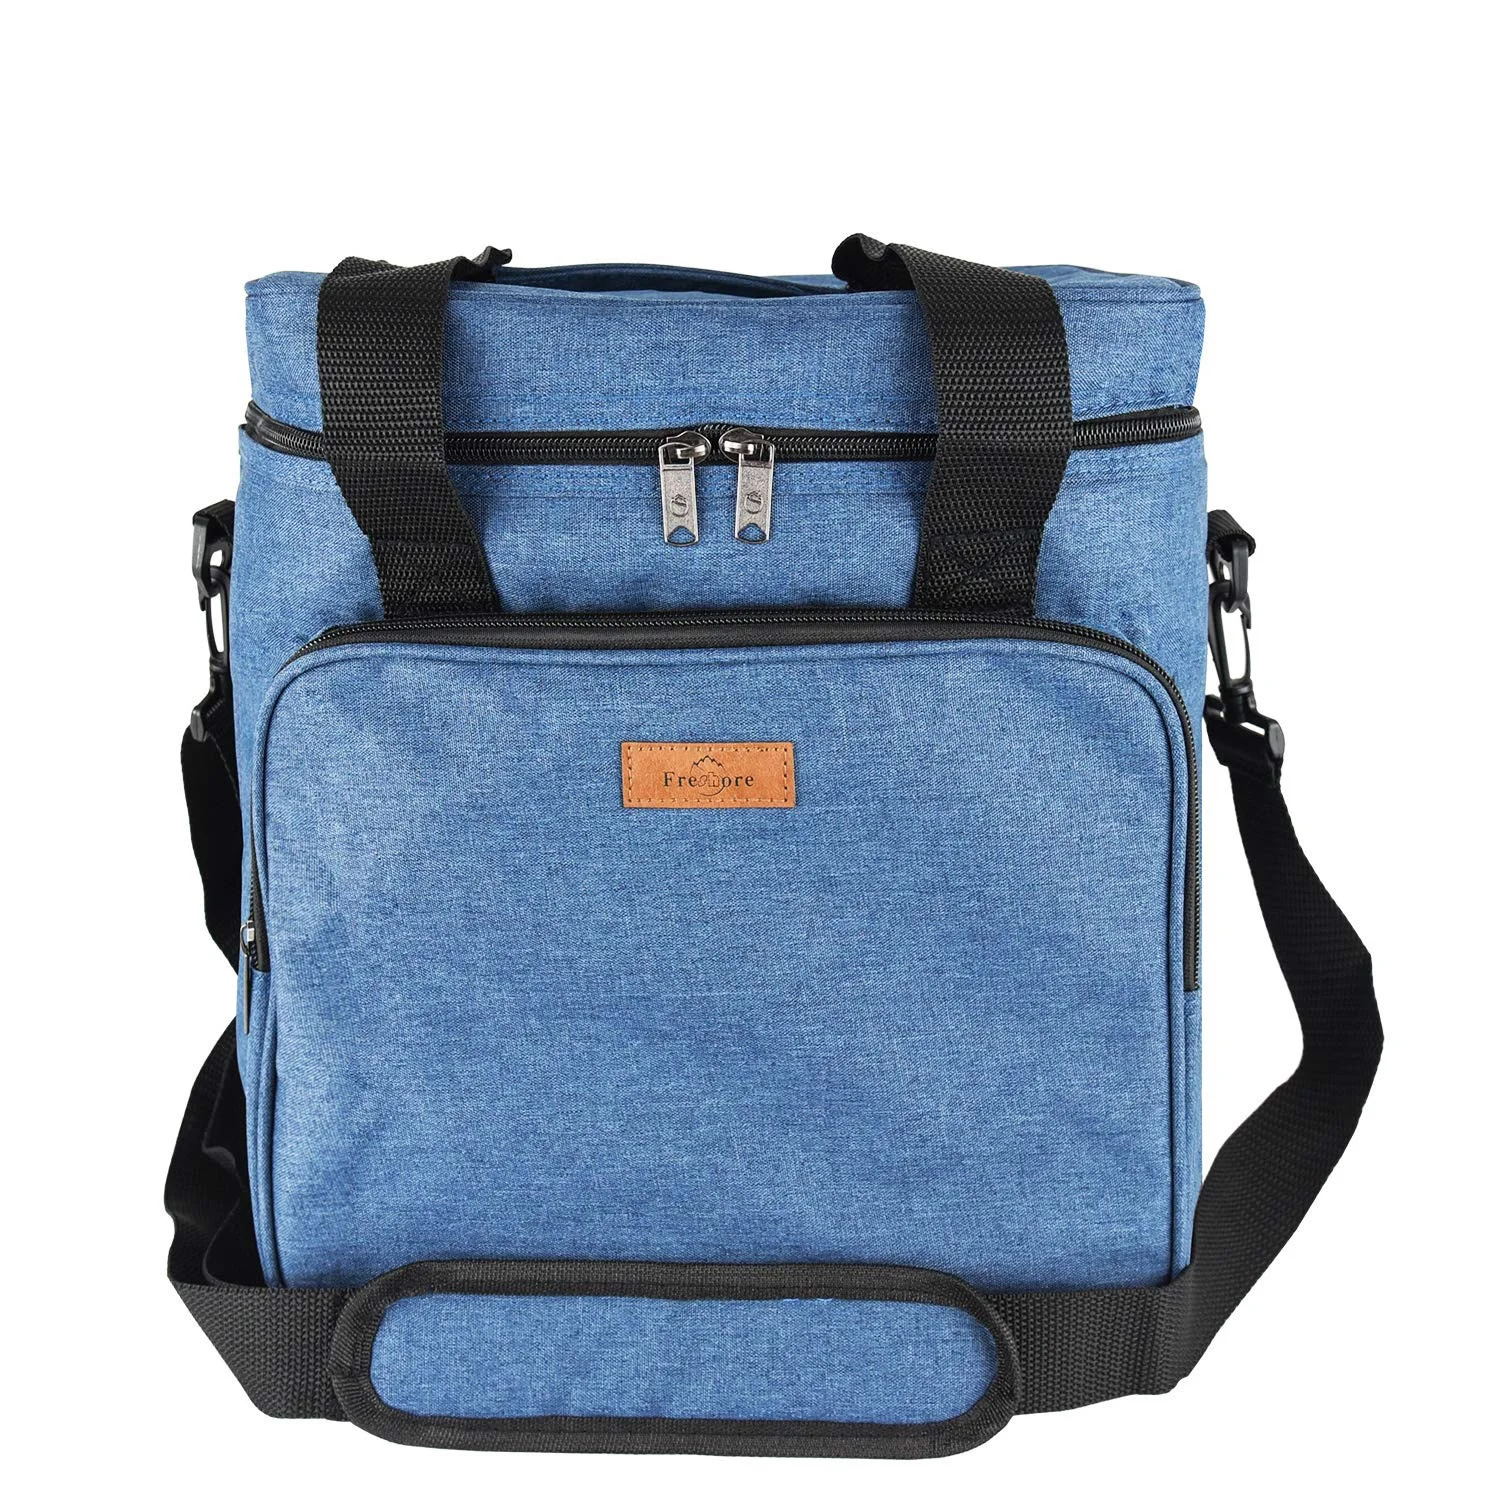 

Insulated Cooler Bag Large Lunch Bag 22 Liter Soft Cooler Bag With Adjustable Shoulder Strap for Men Women to Picnic, Customized color